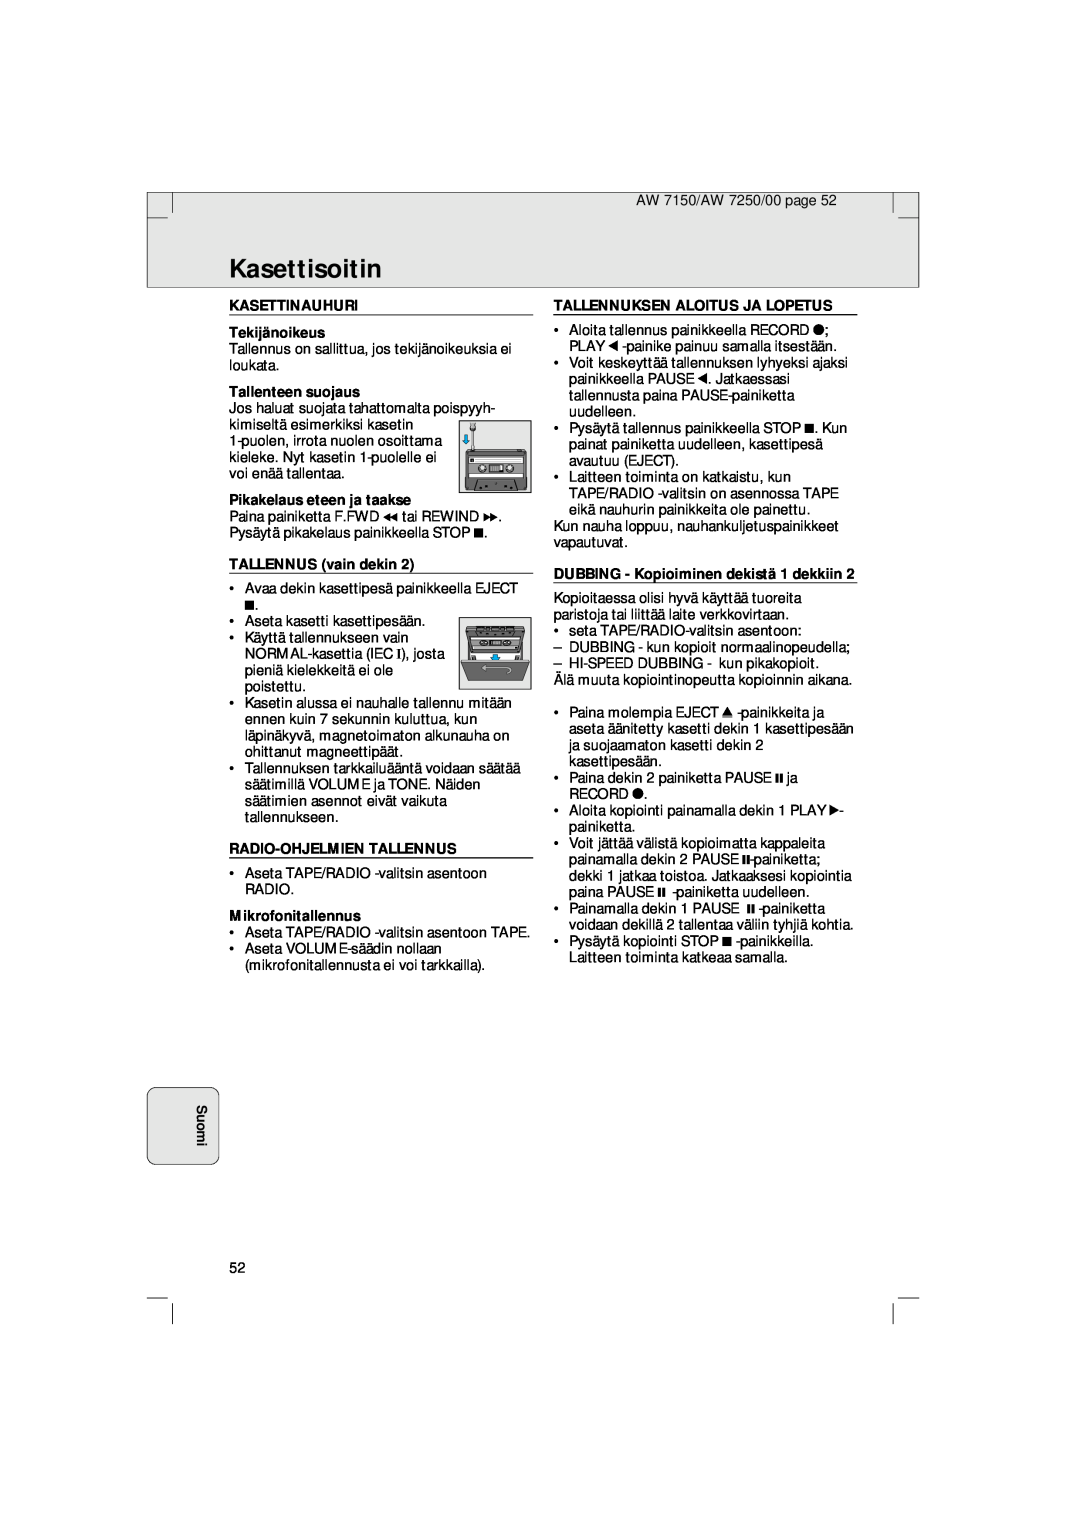 Philips AW 7150/04S Kasettisoitin, Suomi, KASETTINAUHURI Tekijänoikeus, Tallenteen suojaus, Pikakelaus eteen ja taakse 